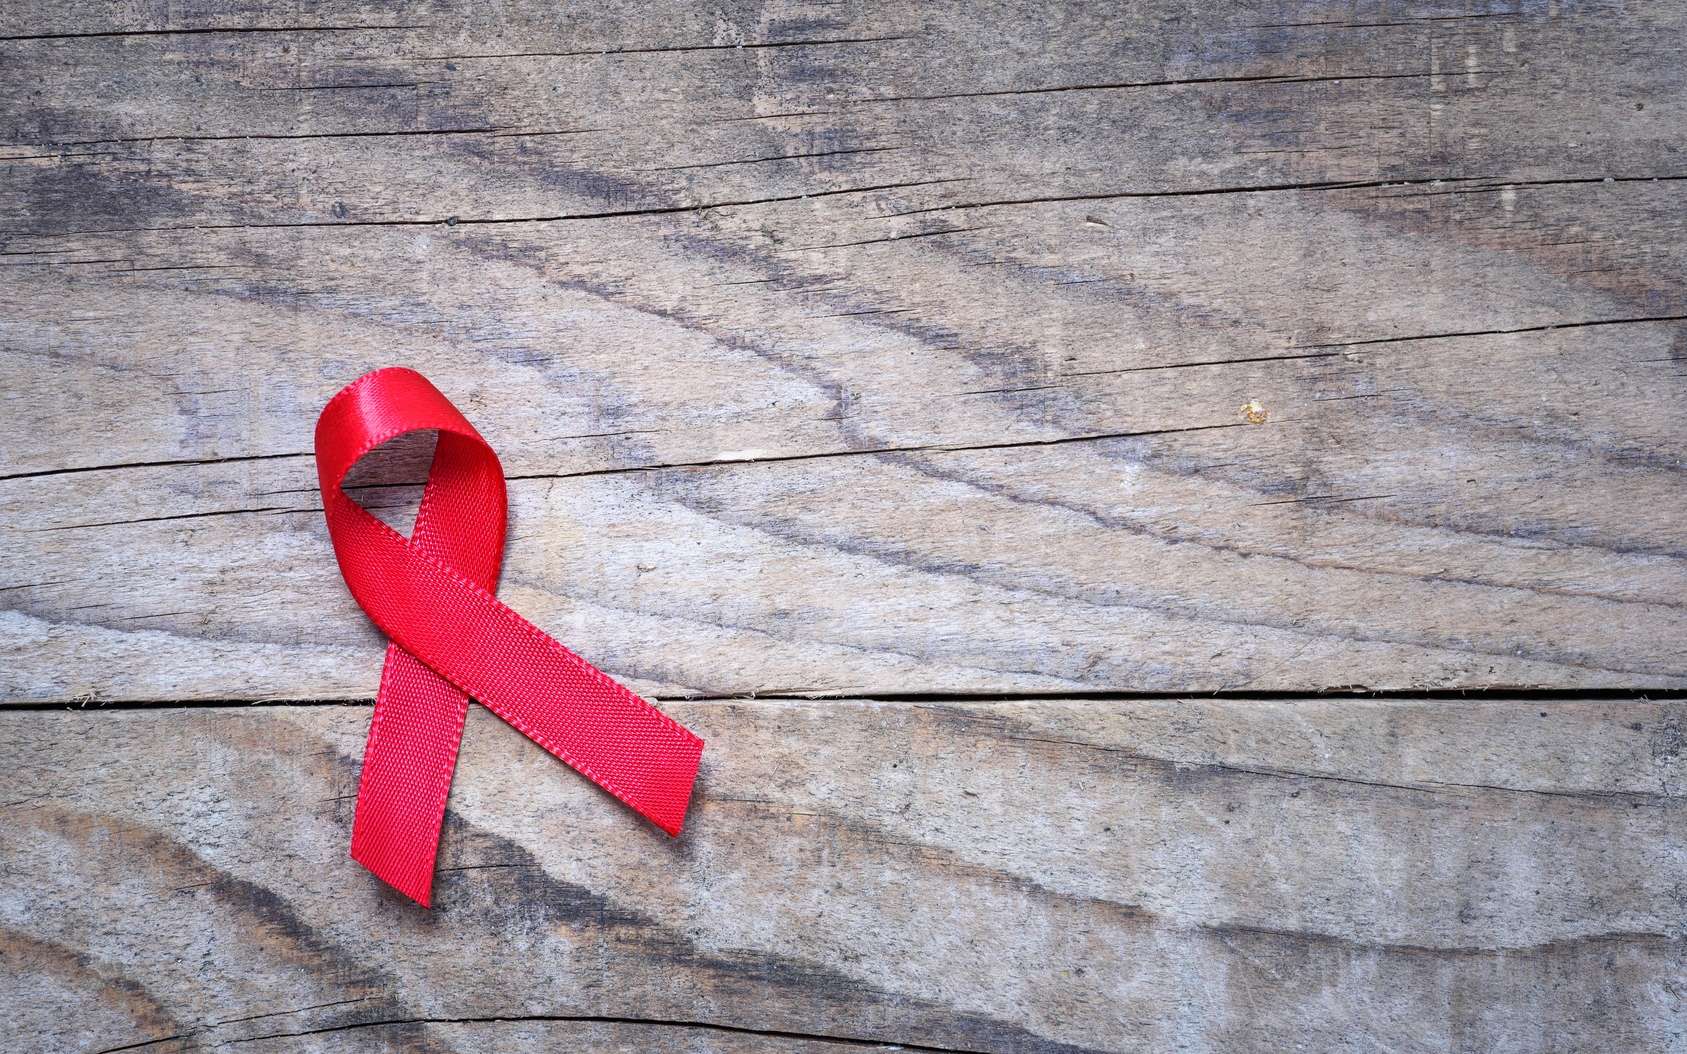 Sida : un traitement révolutionnaire élimine le VIH chez des animaux